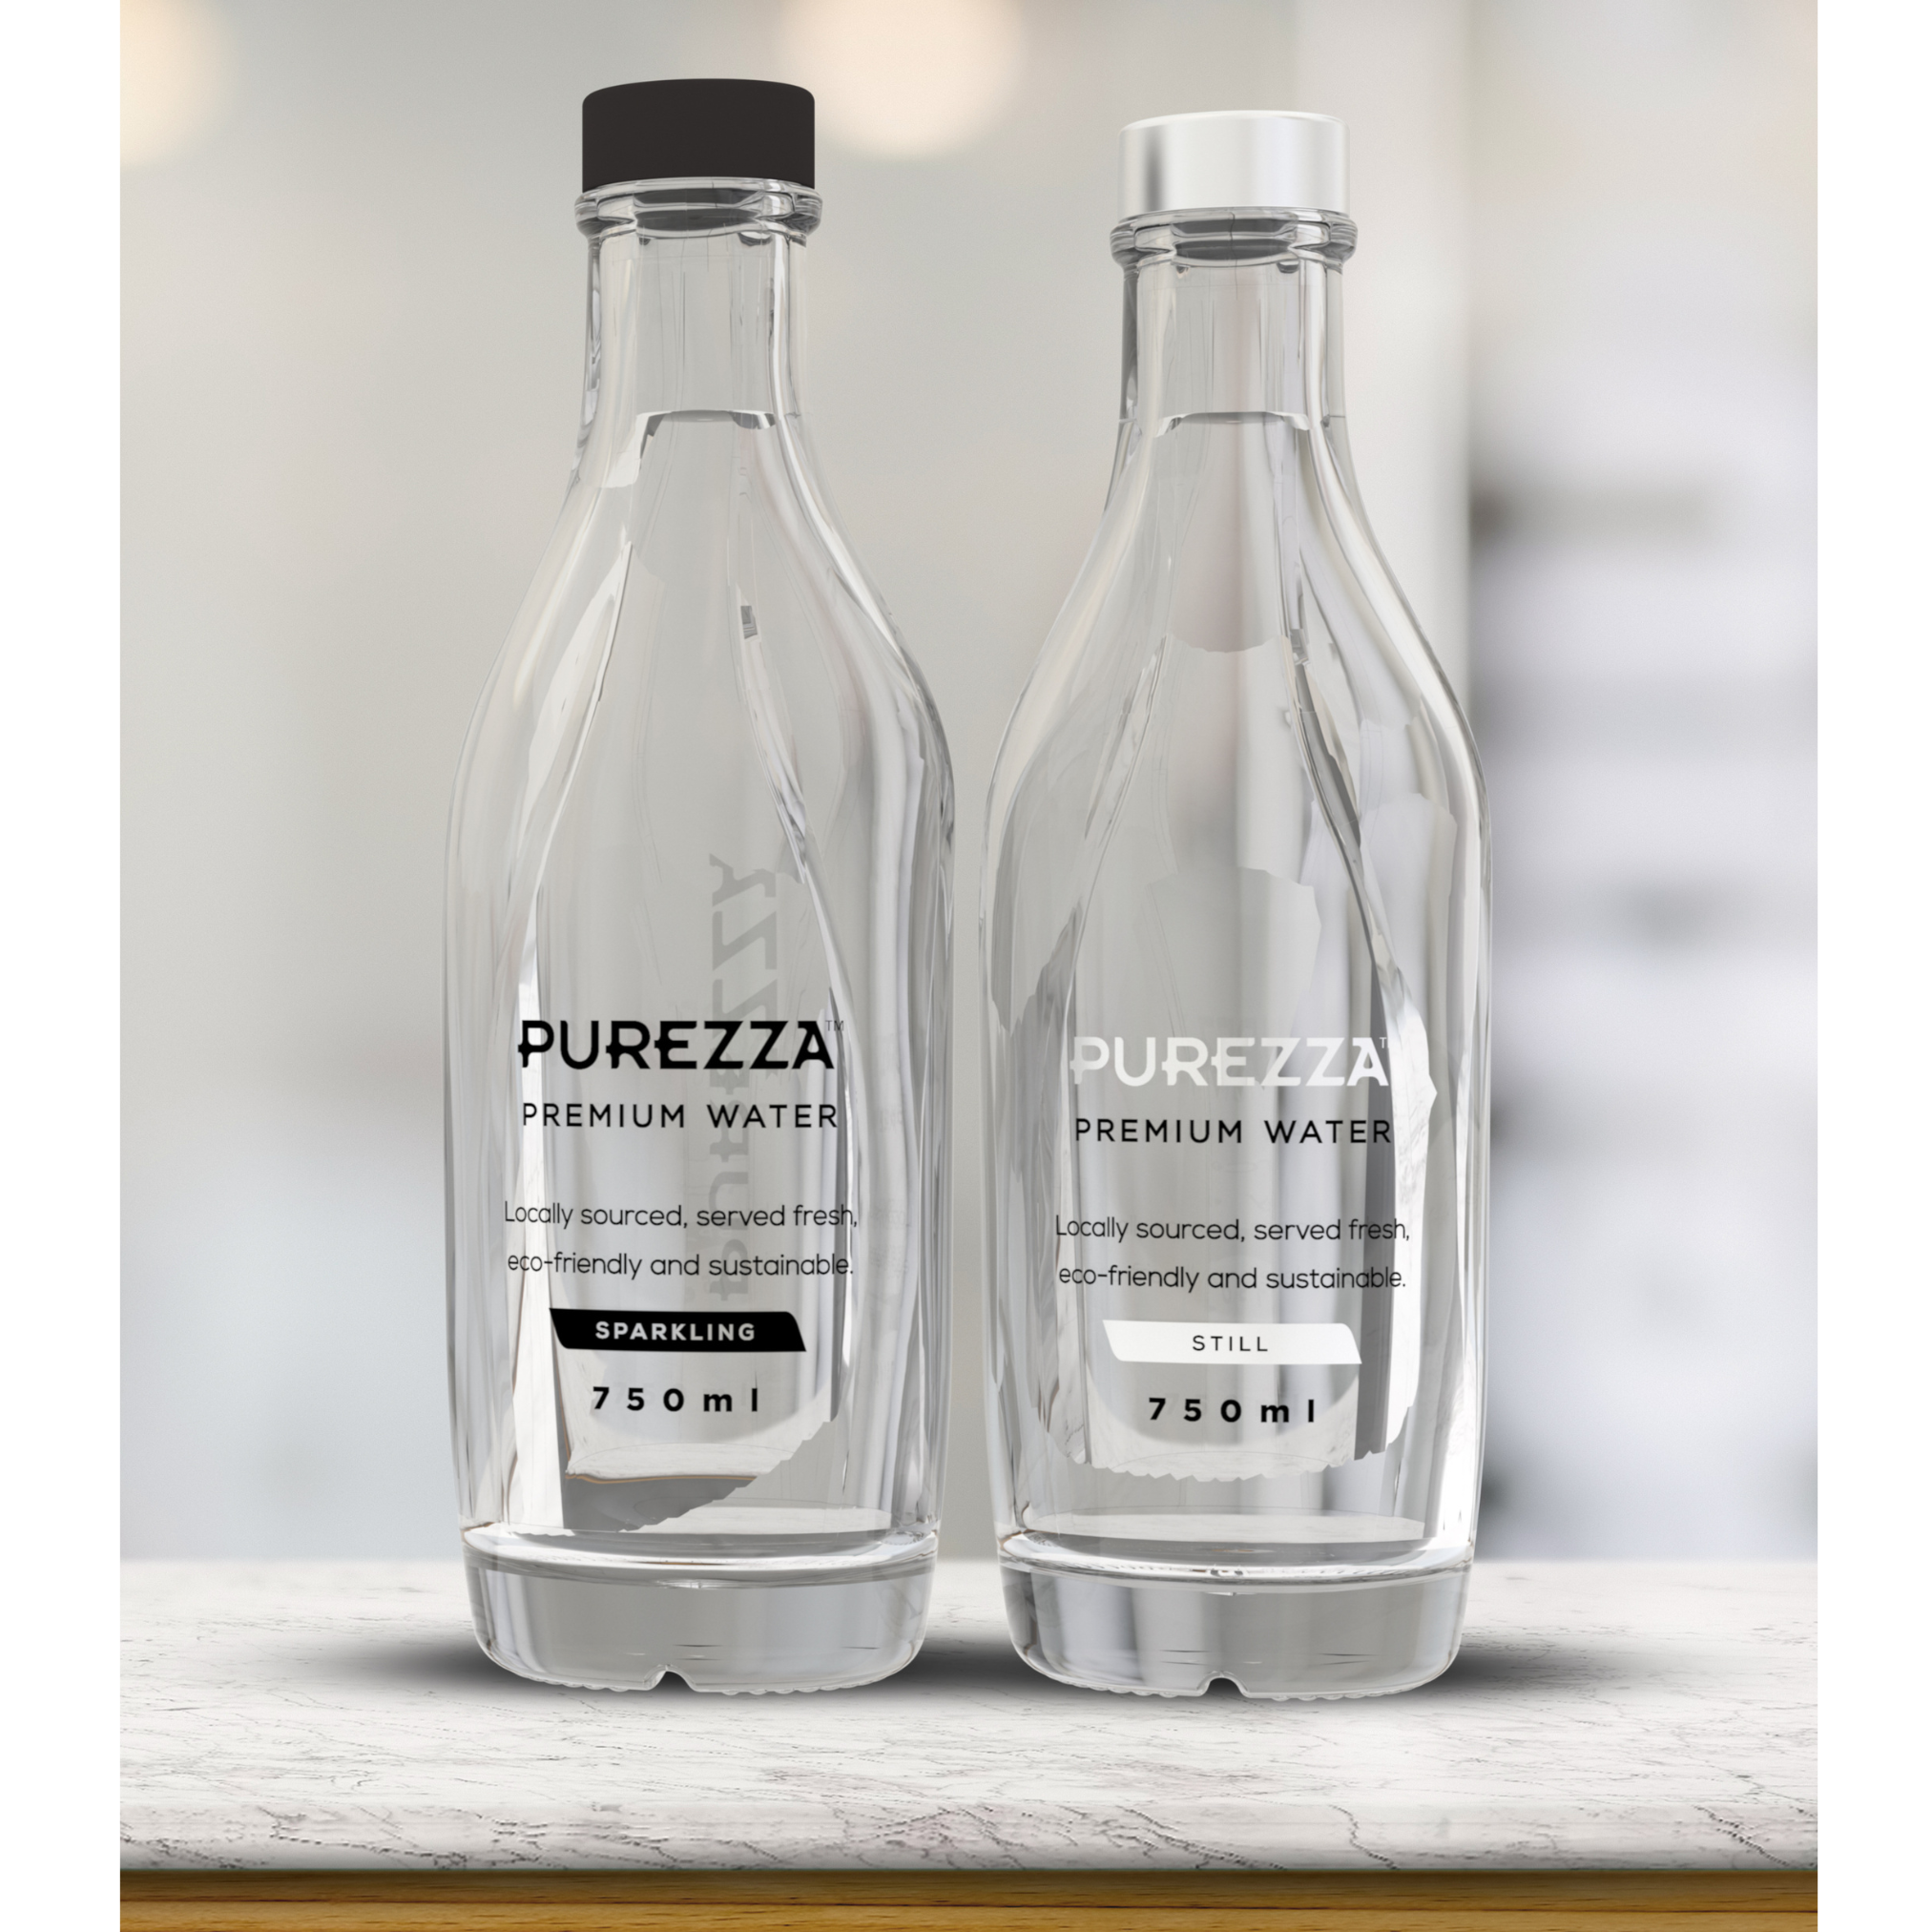 Purezza Sustainable Water - Fresh premium drinking water